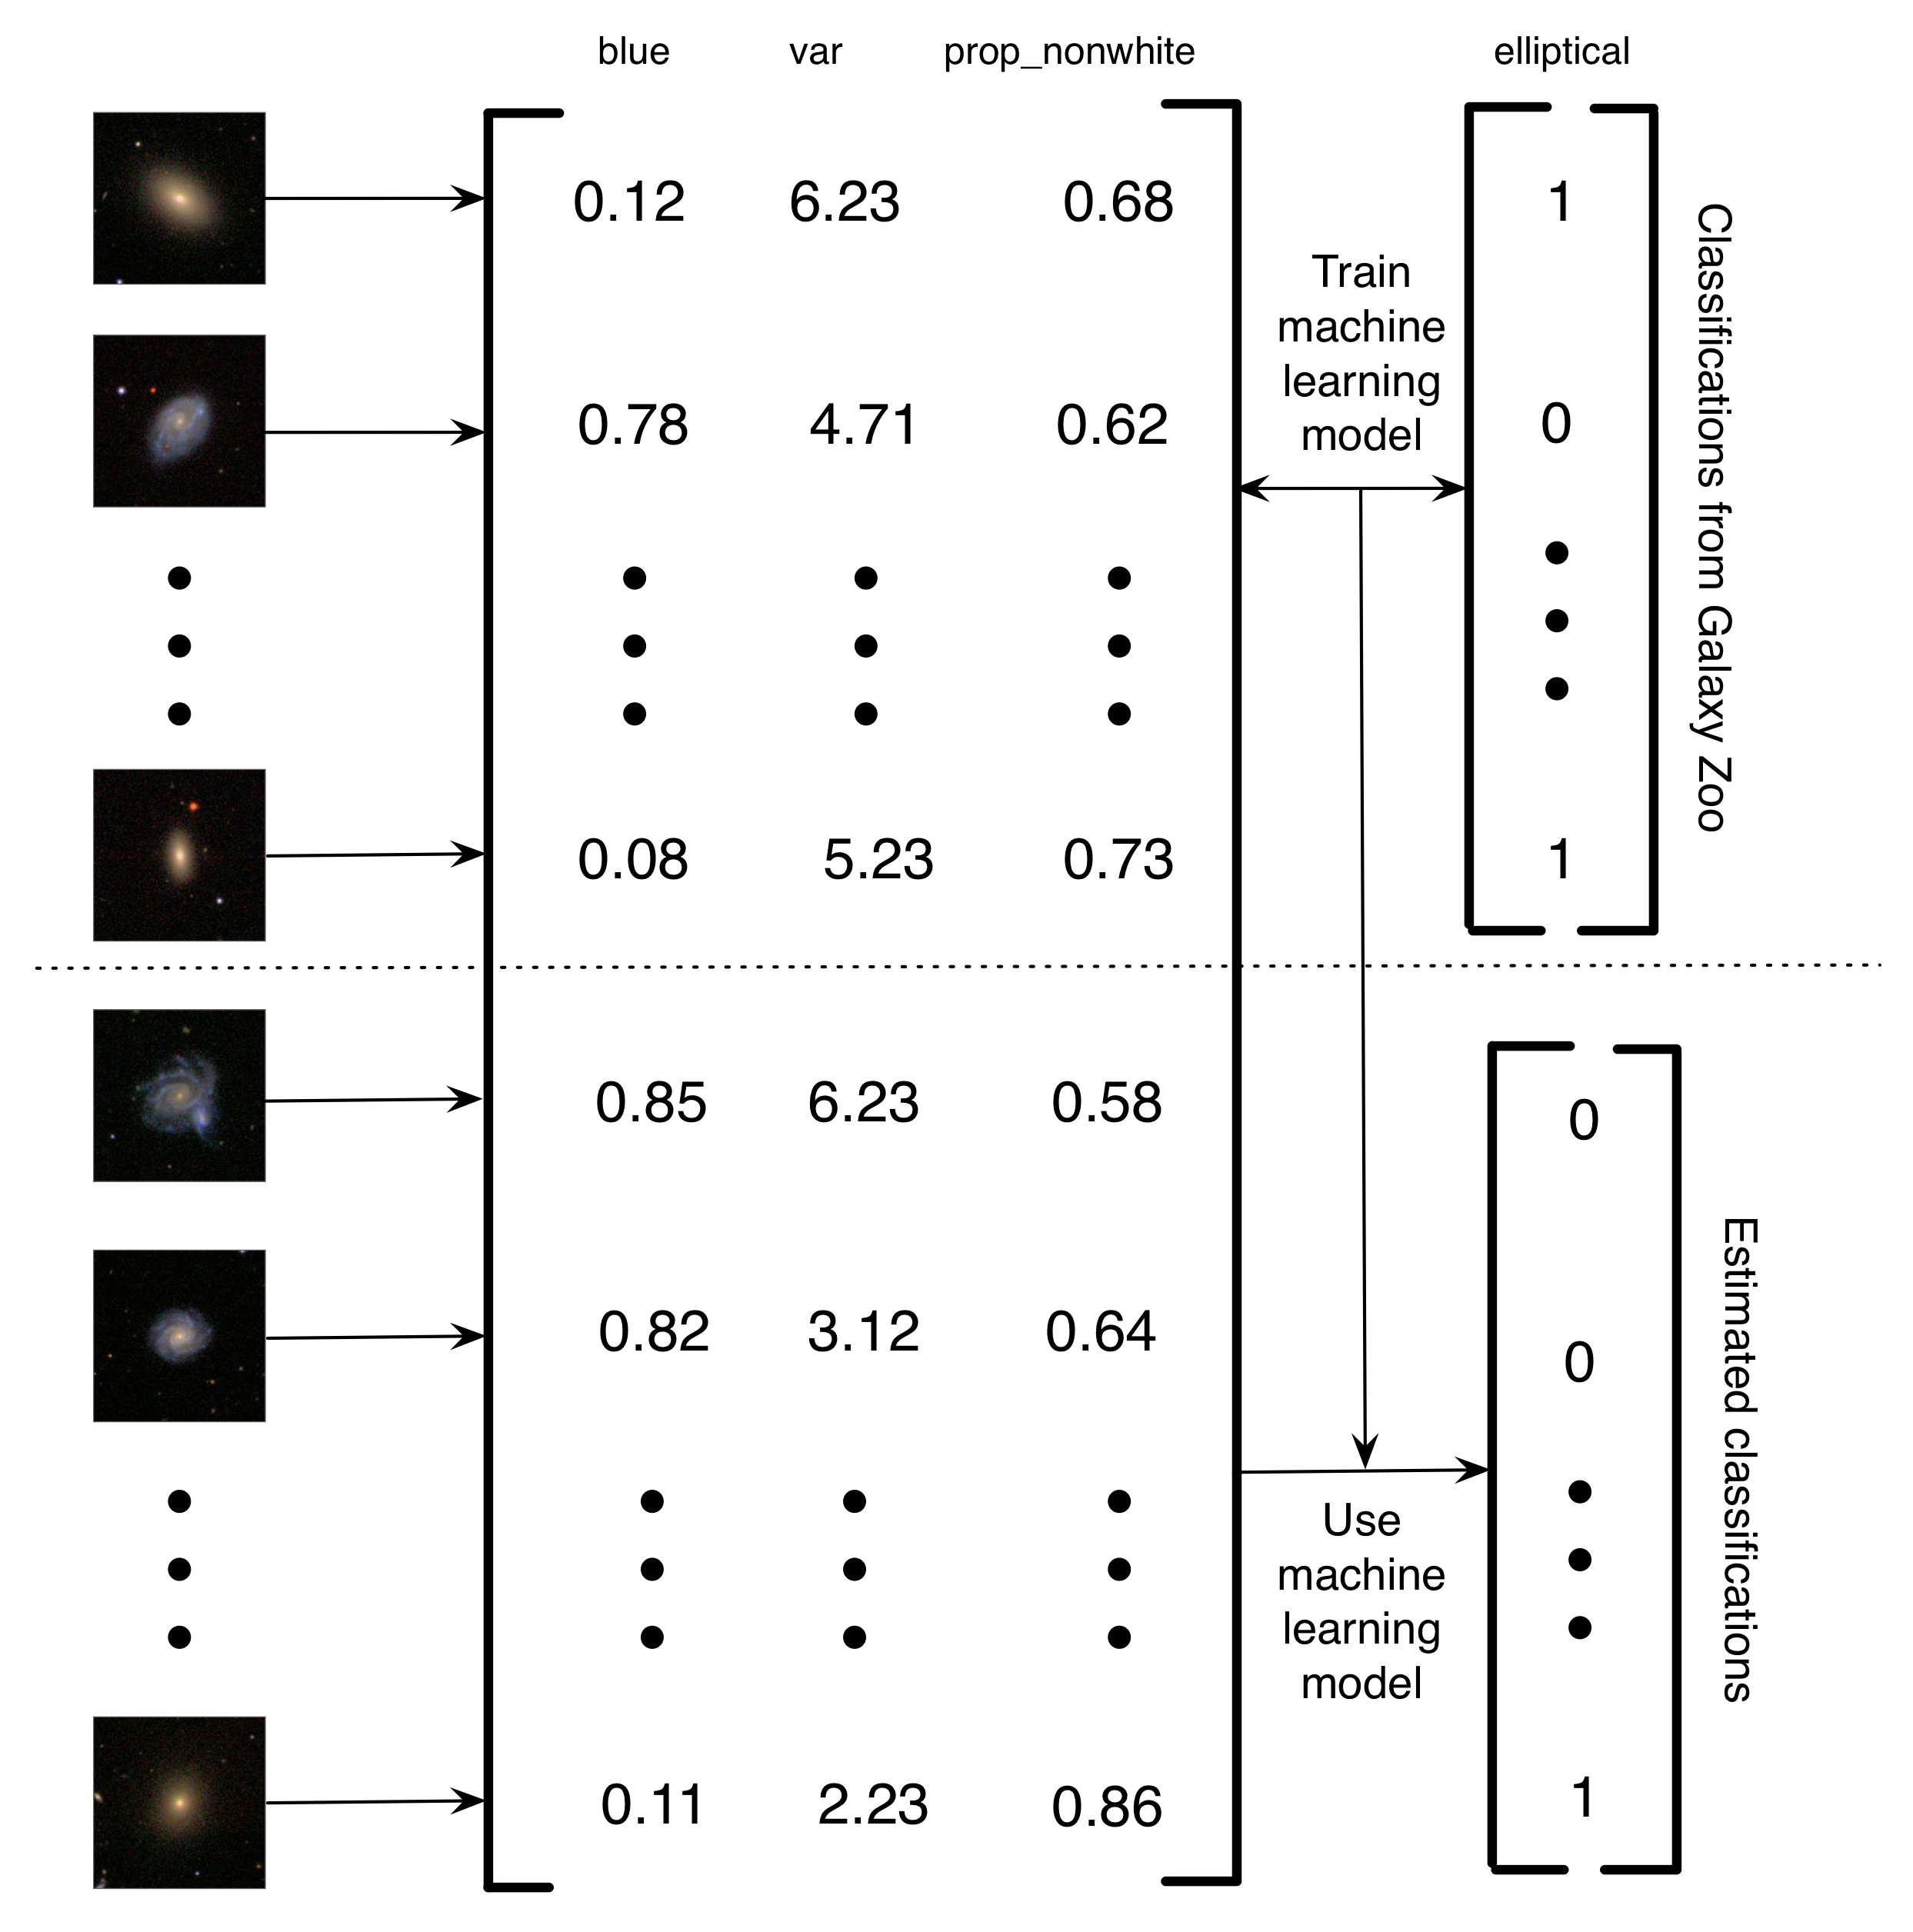 איור 5.4: תיאור פשוט של האופן שבו Banerji et al. (2010) השתמשו בסיווגים בגן החיות של גלקסי כדי להכשיר מודל הלמידה של מכונה לעשות סיווג גלקסיות. תמונות של גלקסיות הומרו במטריצה ​​של תכונות. בדוגמה פשוטה זו, ישנן שלוש תכונות (כמות הכחול בתמונה, השונות בהירות הפיקסלים ושיעור הפיקסלים הלא לבנים). לאחר מכן, עבור קבוצת משנה של תמונות, תוויות גלקסיית החיות משמשות לאמן מודל למידה של מכונה. לבסוף, הלמידה המכונה משמשת לאמידת הסיווגים של הגלקסיות הנותרות. אני קורא לזה מחשב בסיוע מחשב מחשב בסיוע פרויקט, כי במקום שיש בני אדם לפתור בעיה, יש לו בני אדם לבנות מערך נתונים שניתן להשתמש בהם כדי להכשיר מחשב כדי לפתור את הבעיה. היתרון של מחשב זה בסיוע מחשב מחשב המערכת היא שזה מאפשר לך להתמודד עם כמויות אינסופיות של נתונים באמצעות רק כמות מוגבלת של מאמץ אנושי. תמונות - גלקסיות, לשכפל, אישור, sloan, דיגיטלי, שמיים, סקר.